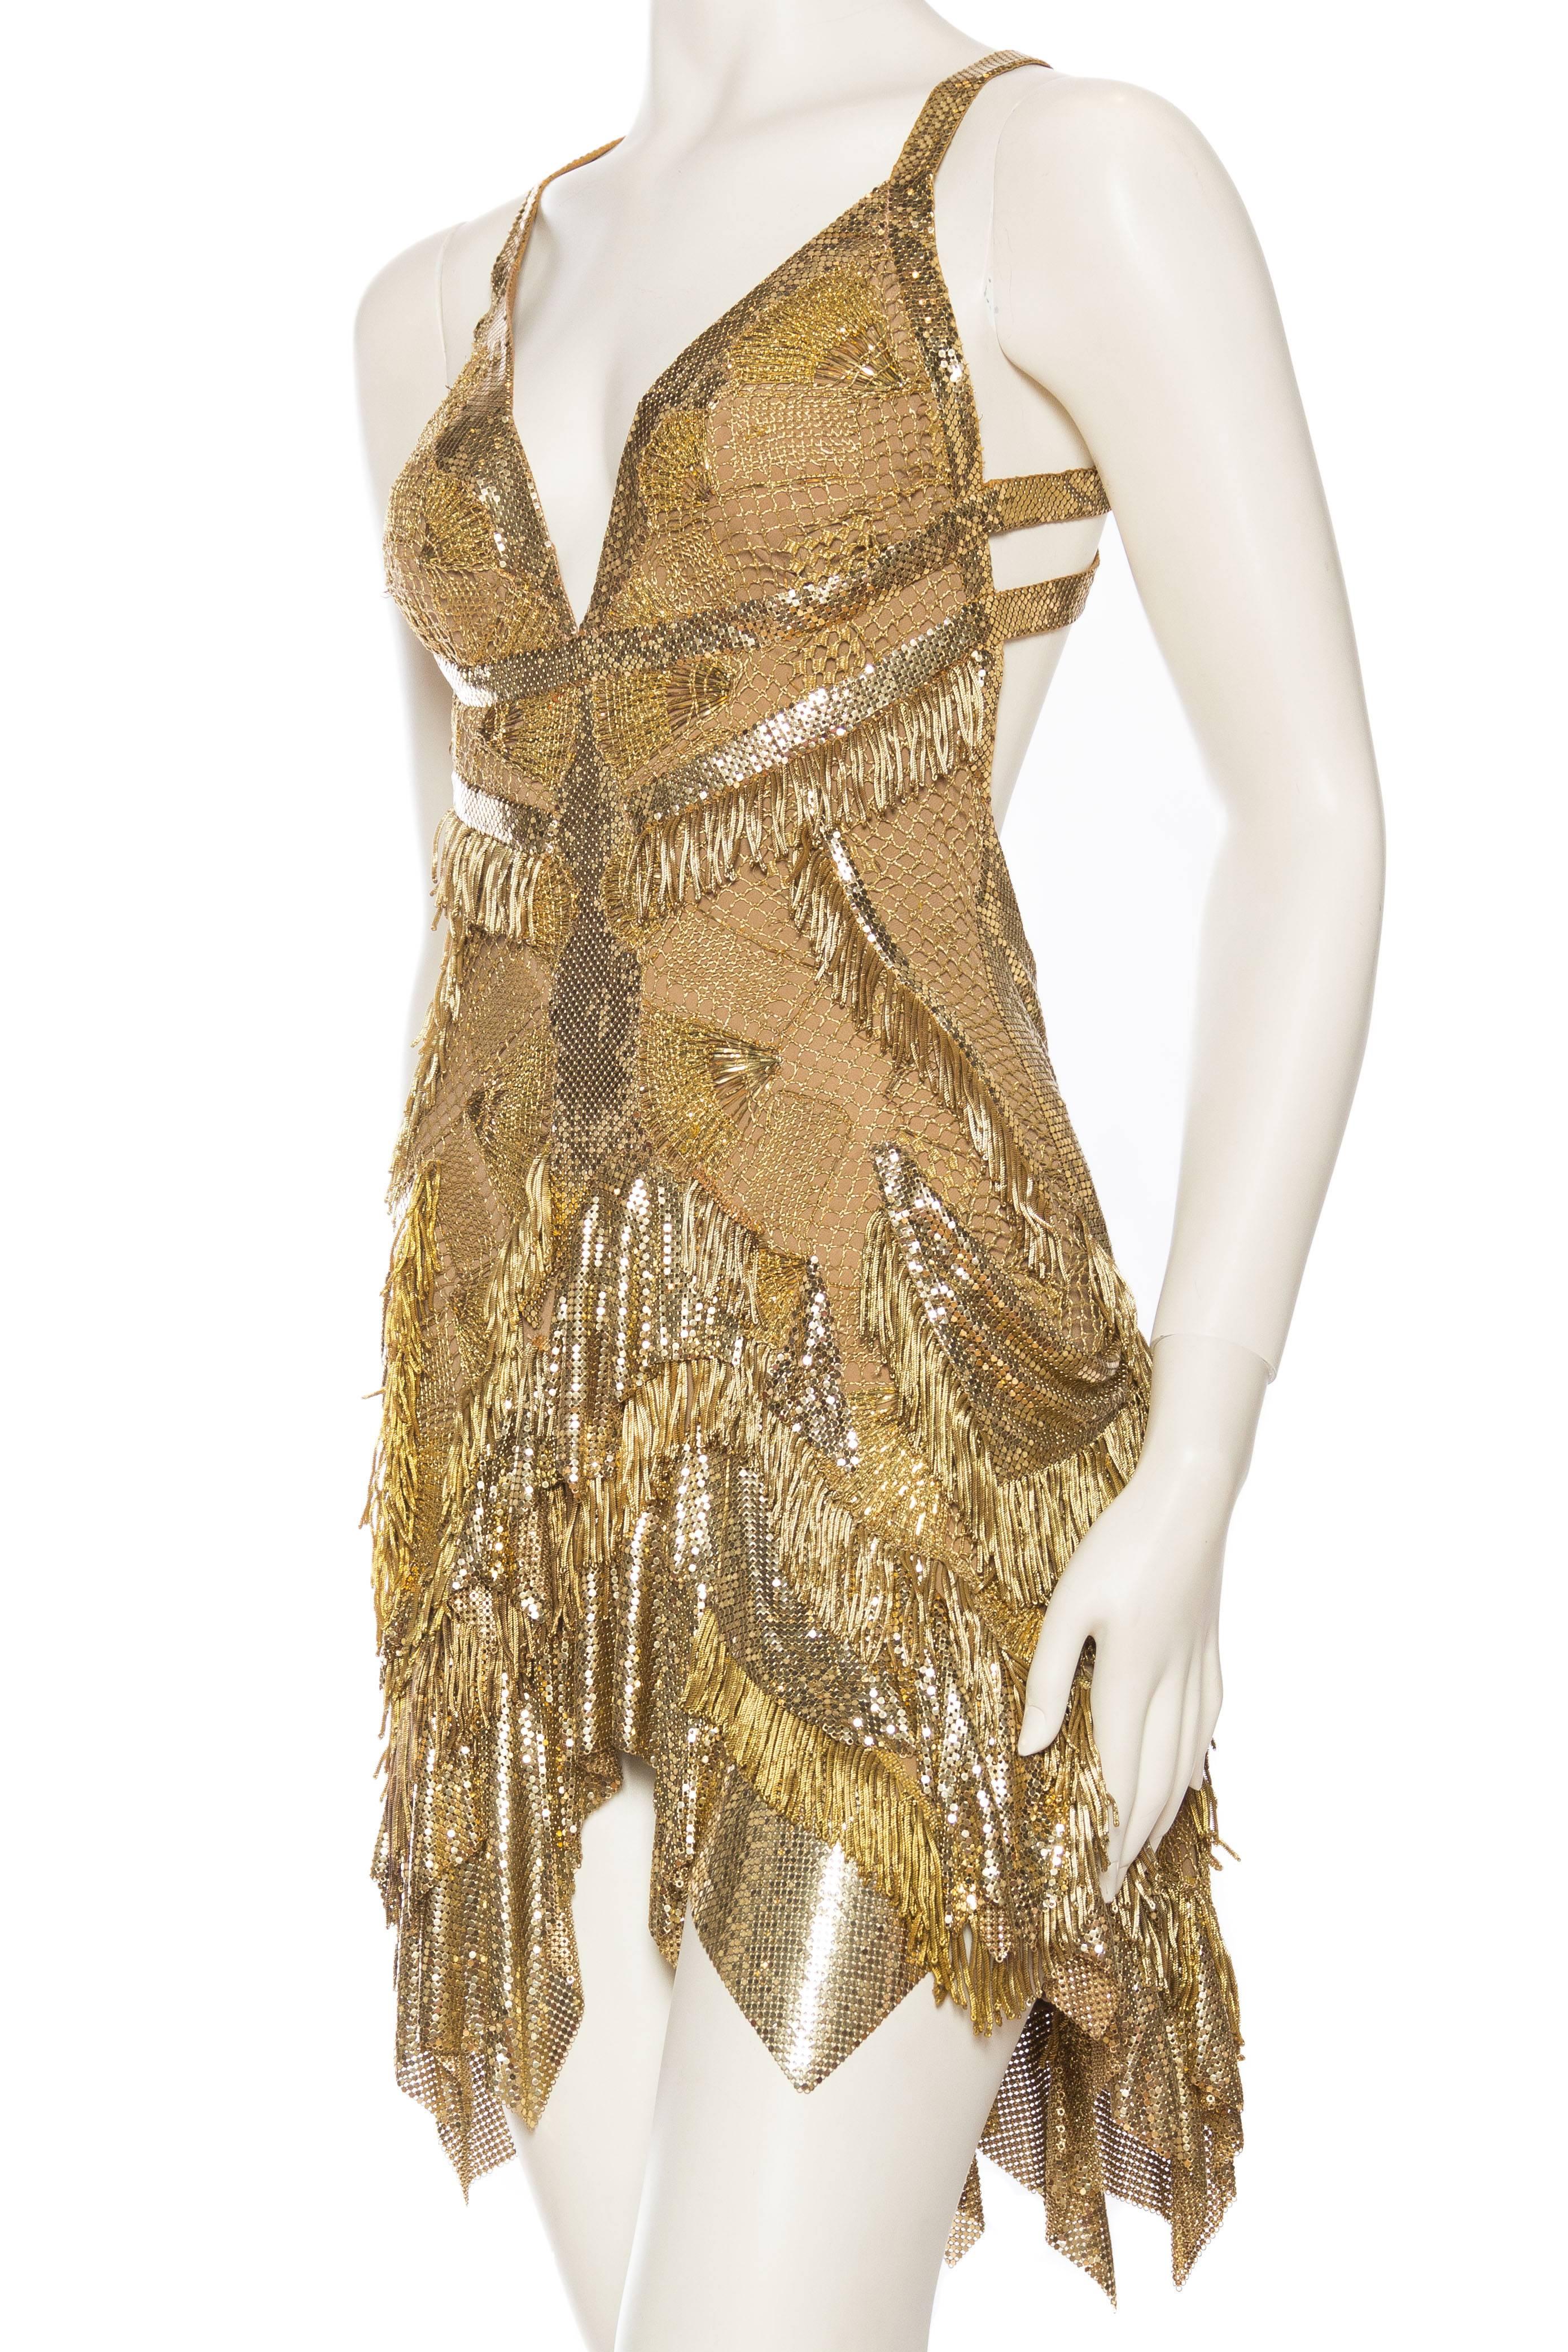 MORPHEW ATELIER - Robe de cocktail à franges en dentelle dorée et maille métallique Pour femmes en vente